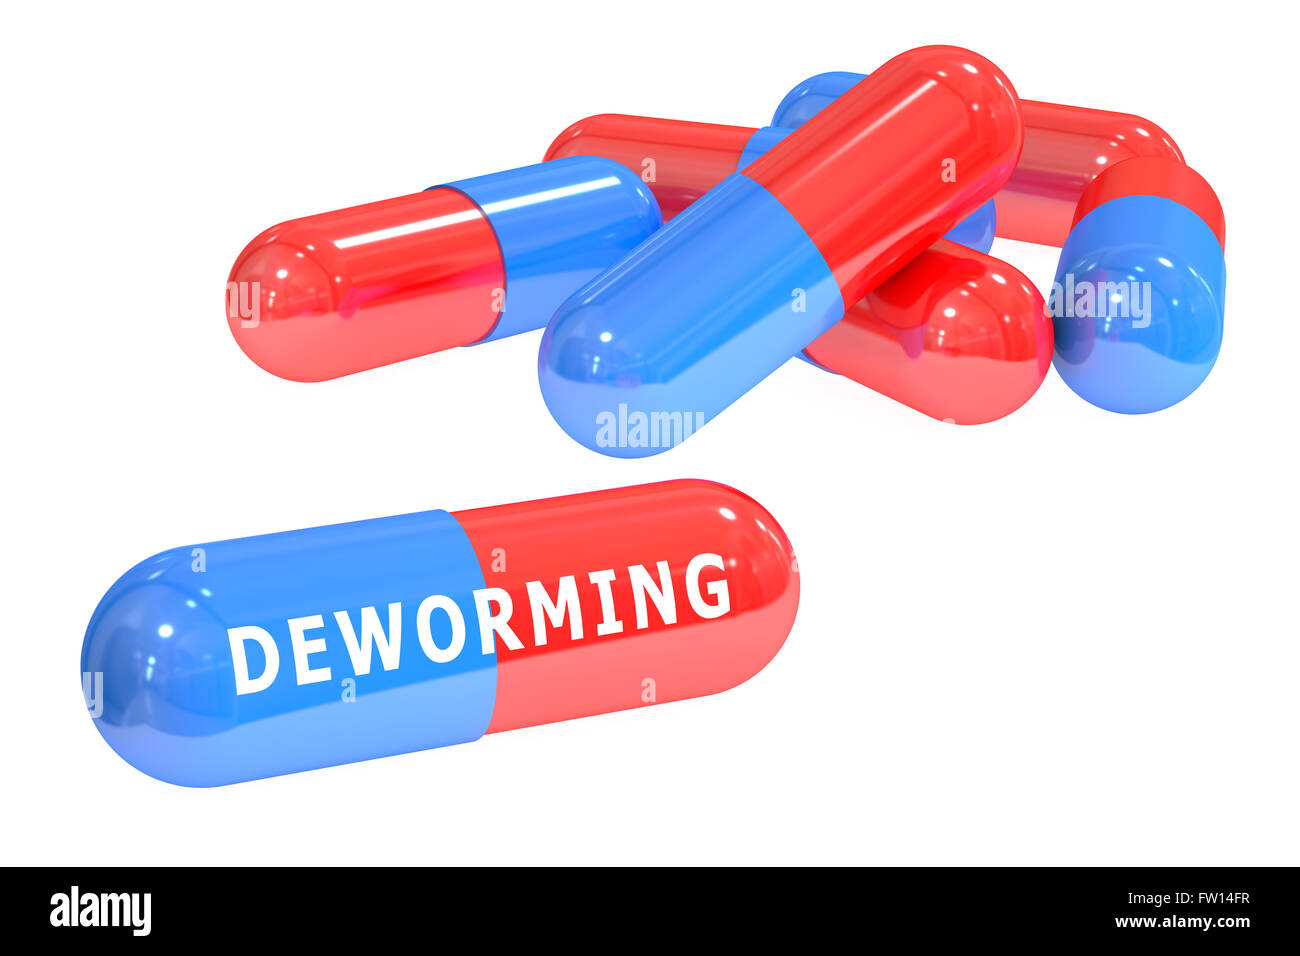 Deworming concetto, 3D rendering isolati su sfondo bianco Foto Stock